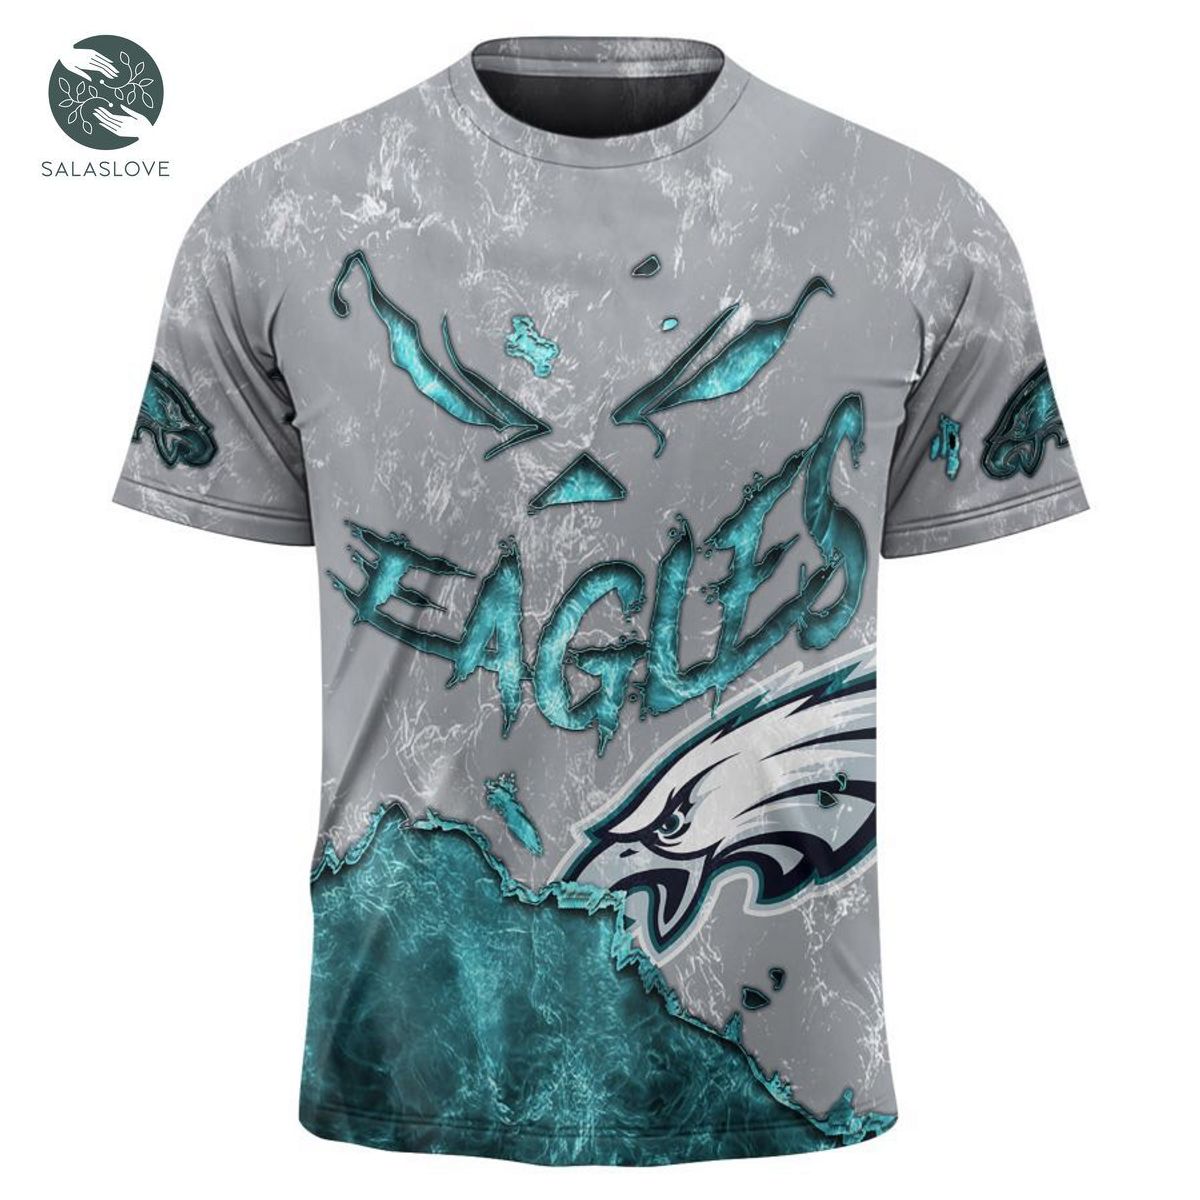 Philadelphia Eagles T-shirt 3D devil eyes gift for fans